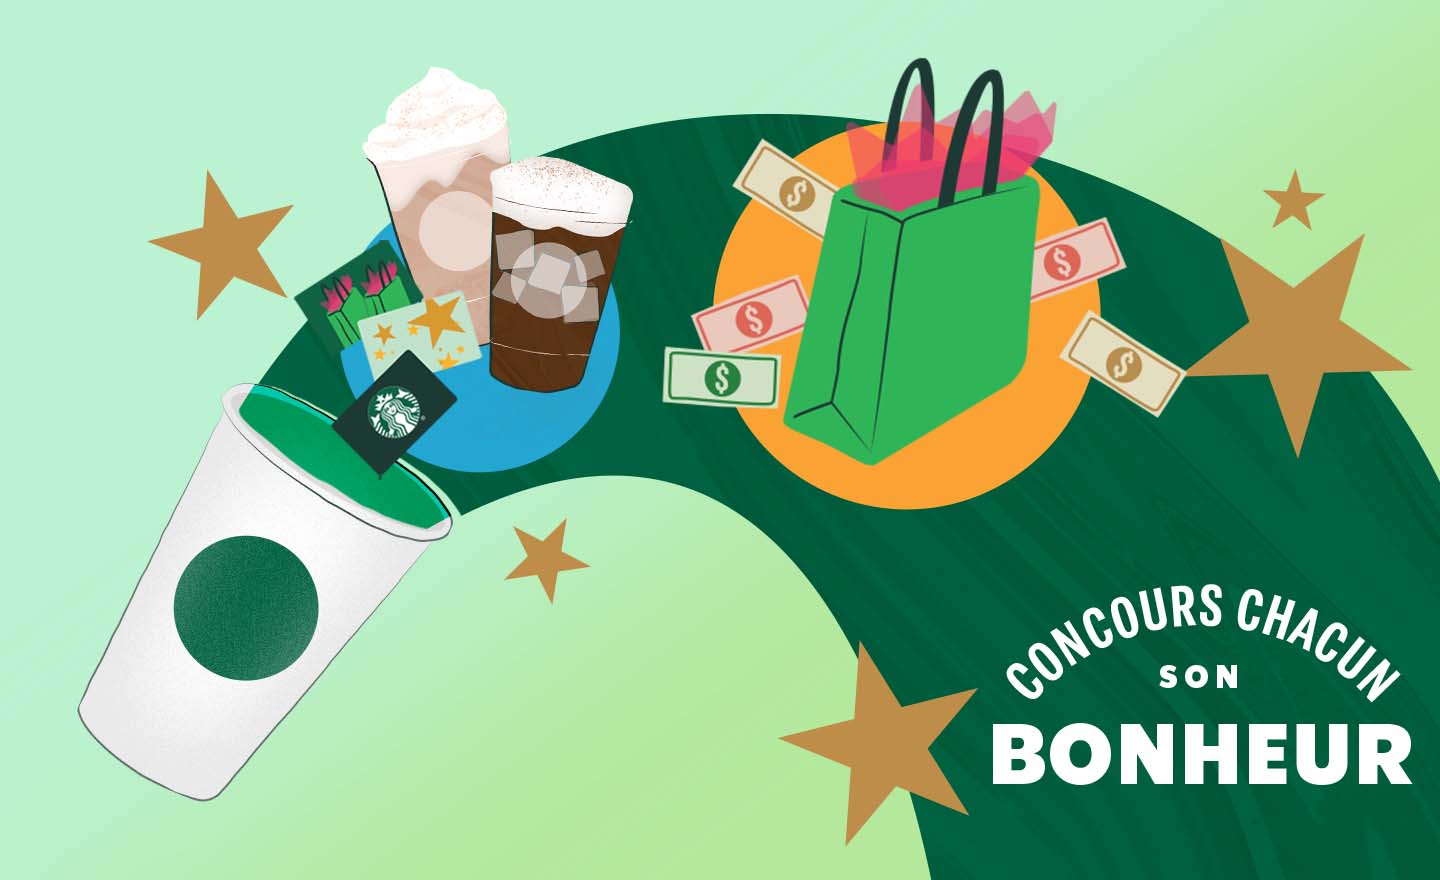 CONCOURS CHACUN SON BONHEUR - Tasse Starbucks et tourbillon vert d’où sortent de l’argent, un sac à provisions, des boissons et des étoiles